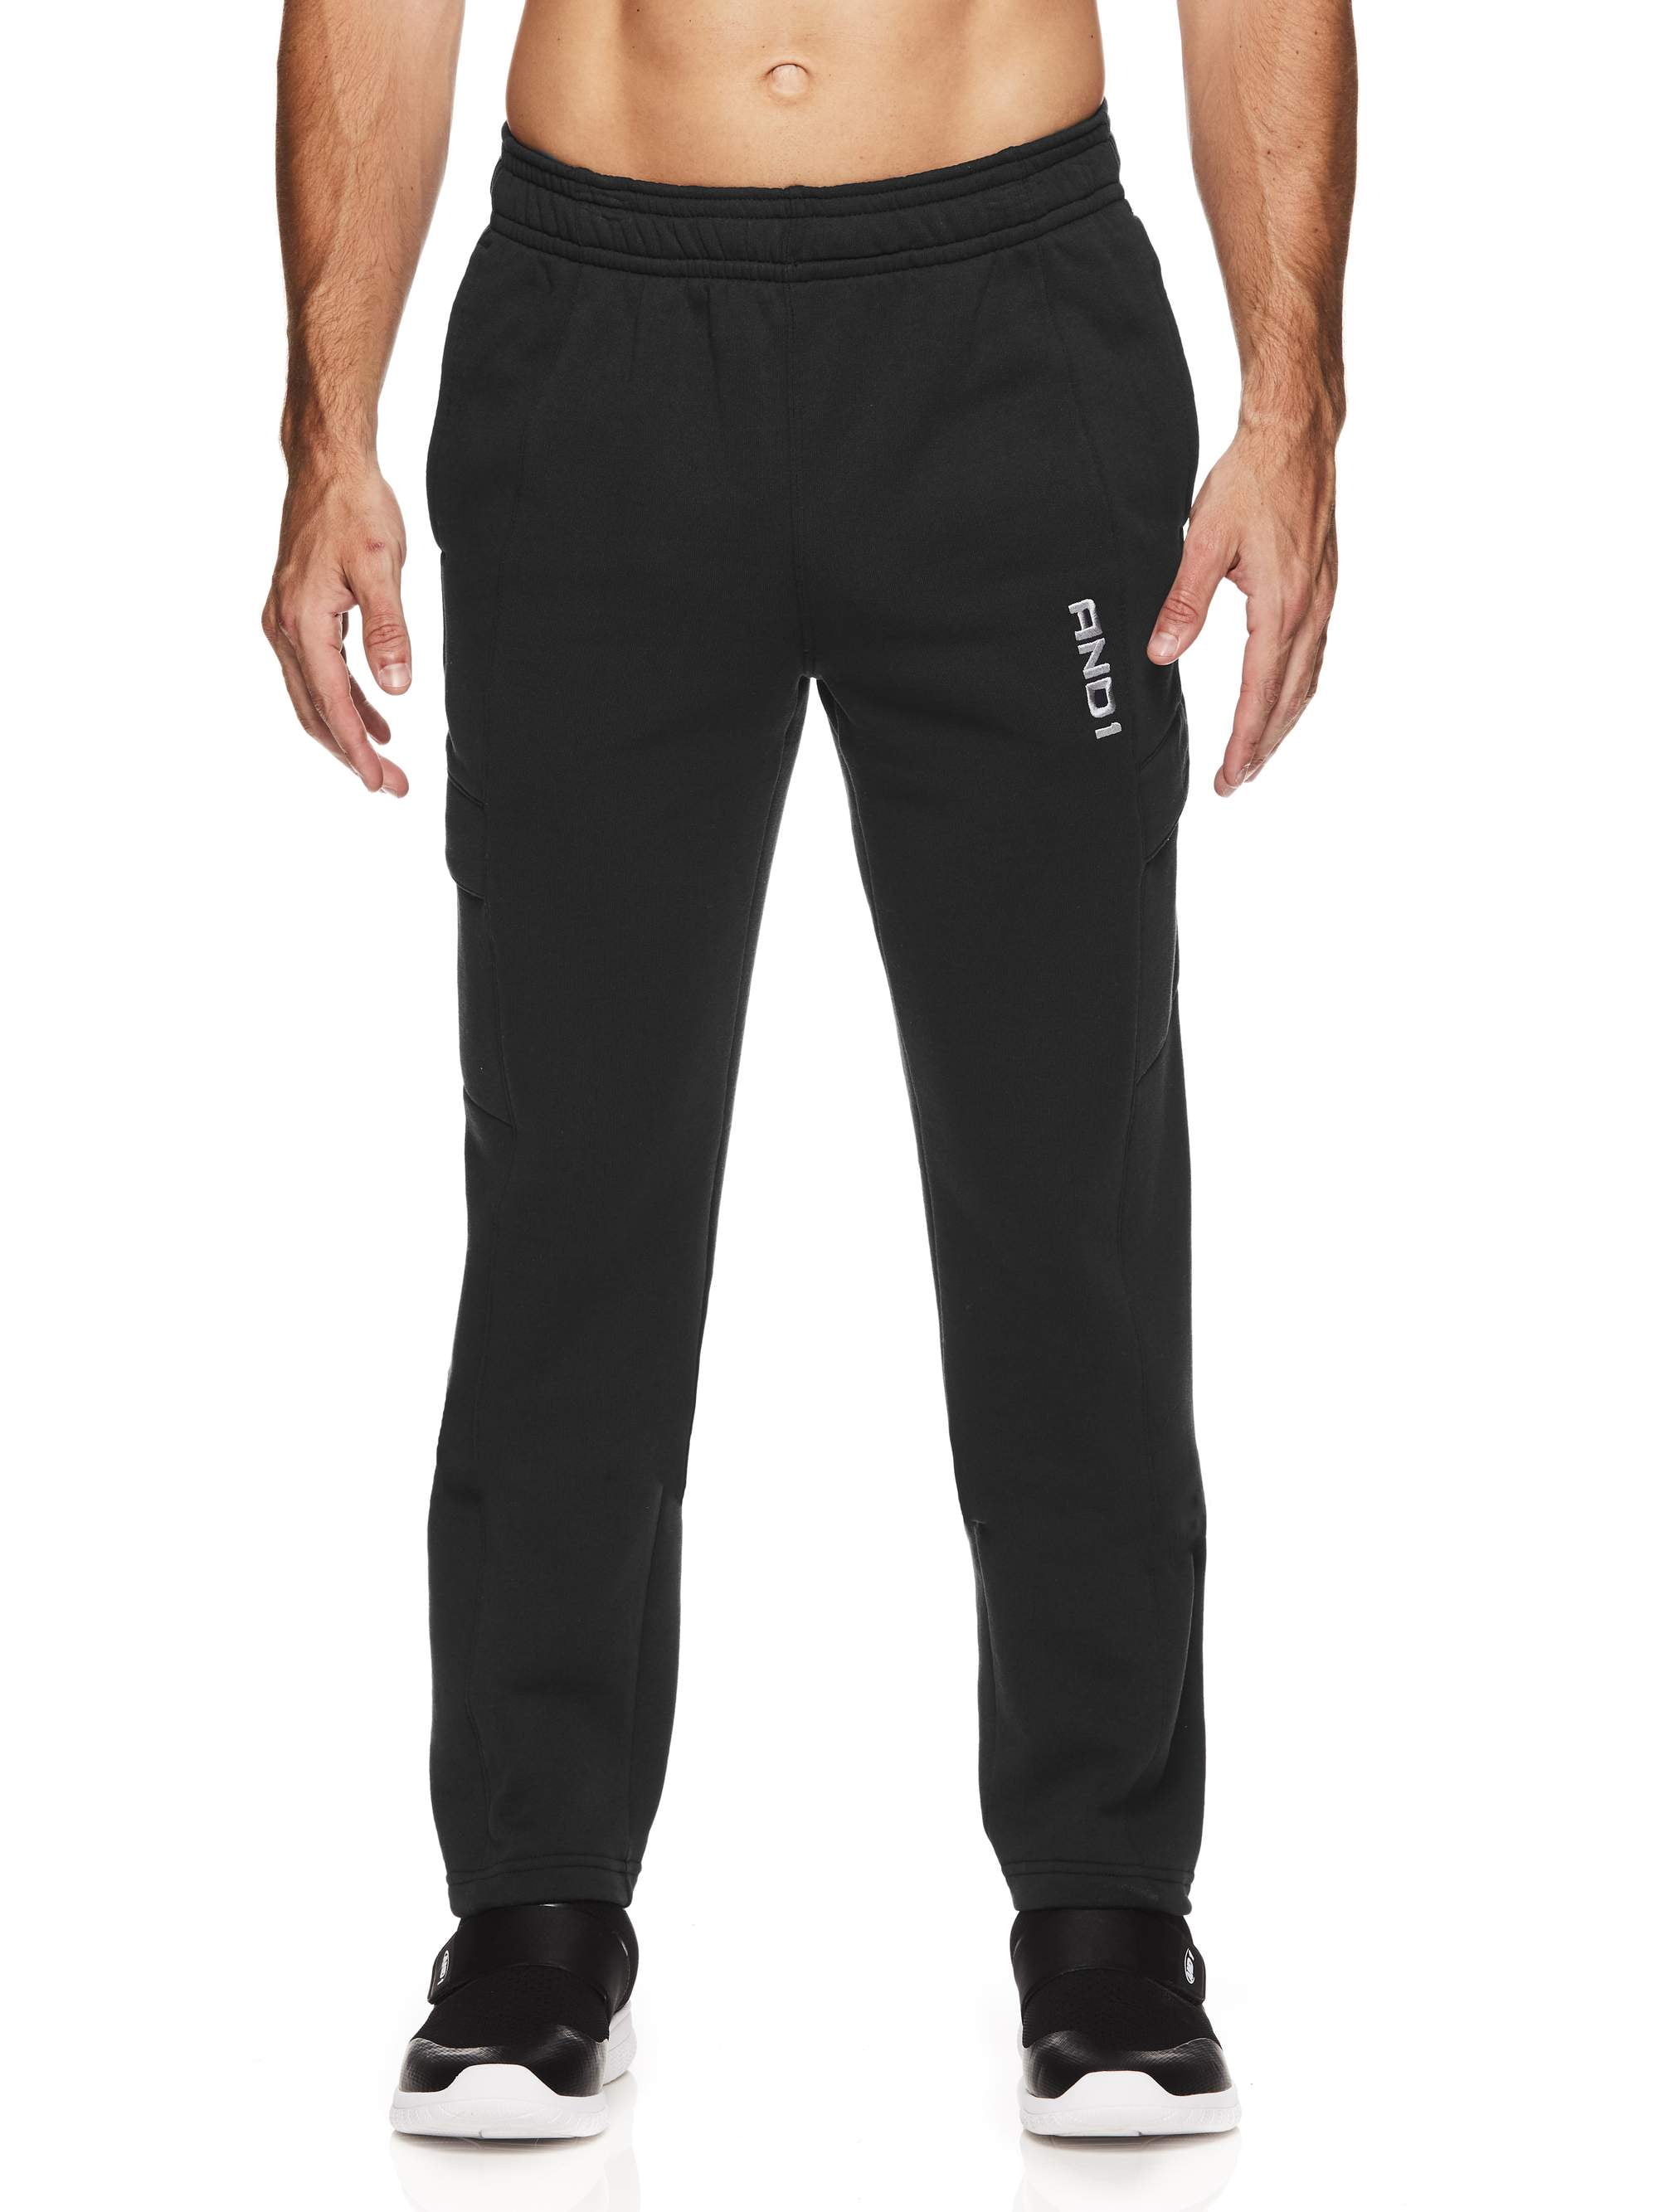 AND1 Men's Fleece Performance Cargo Pants - Walmart.com